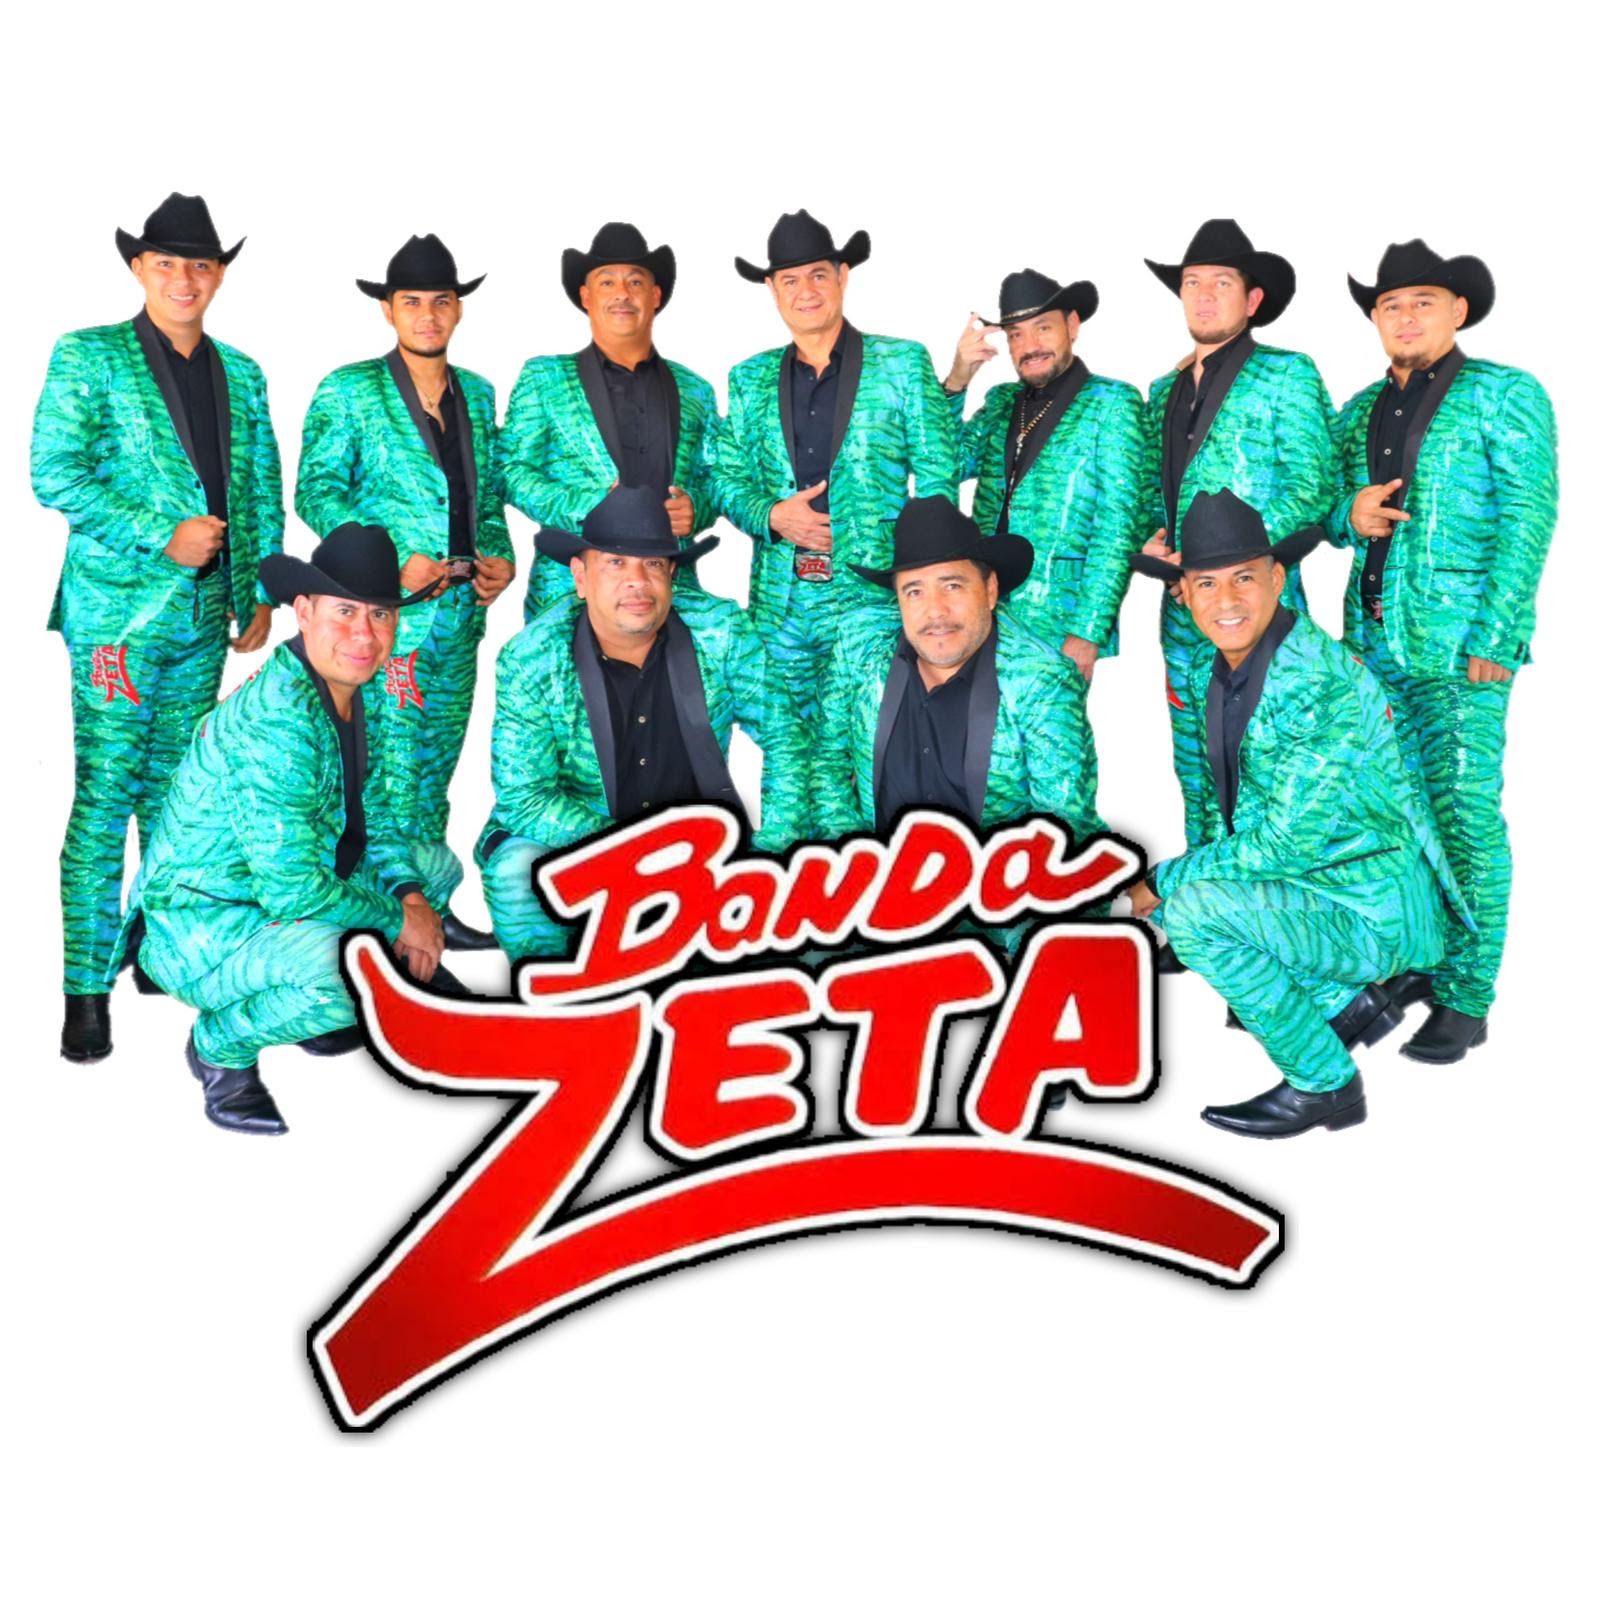 Banda Zeta sera banda principal en el festival latinoamericano más